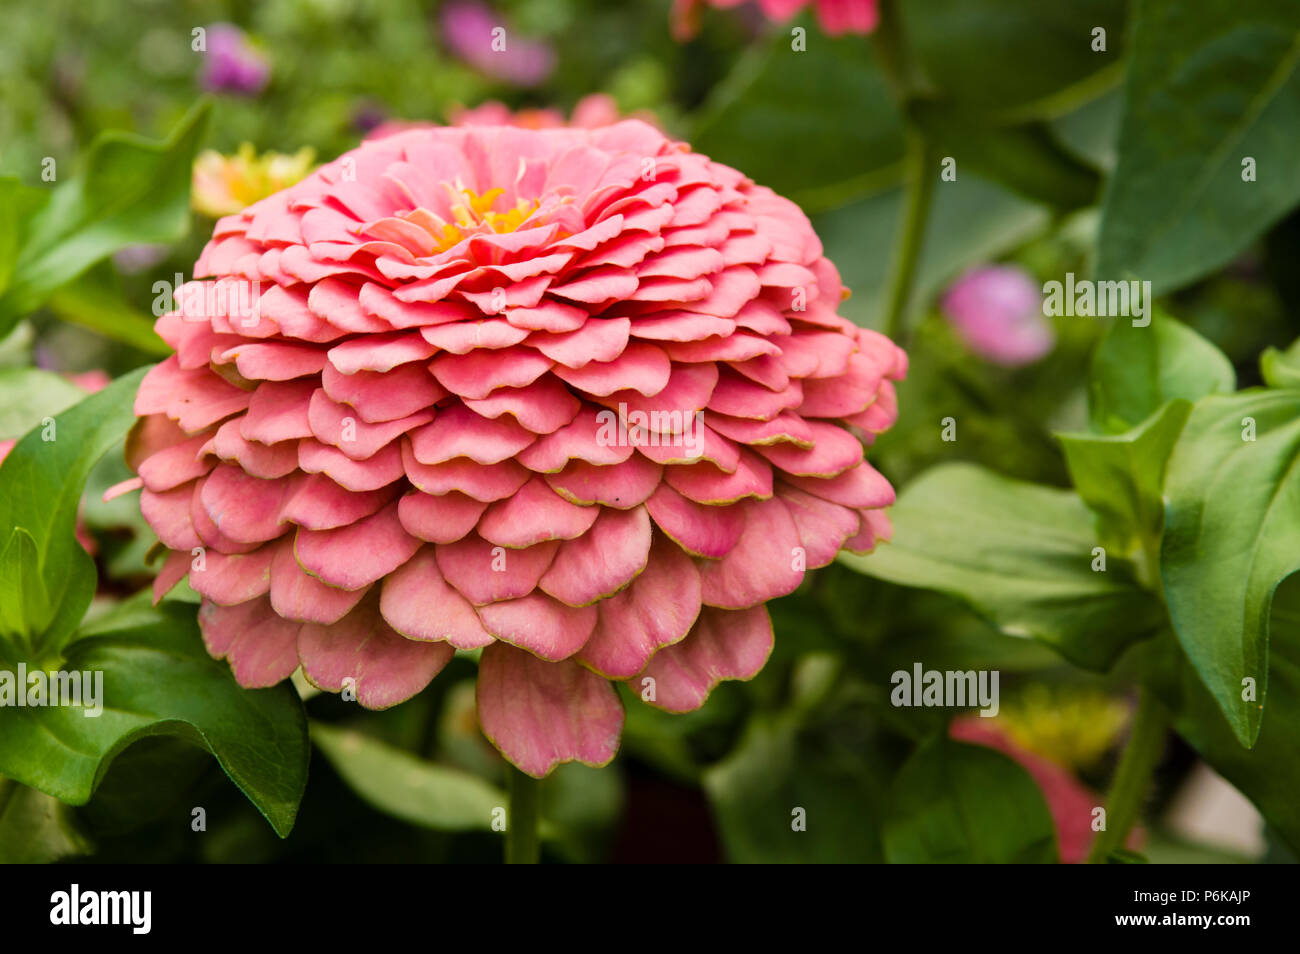 Zinnia pianta con fiore rosa mostra petali Foto Stock